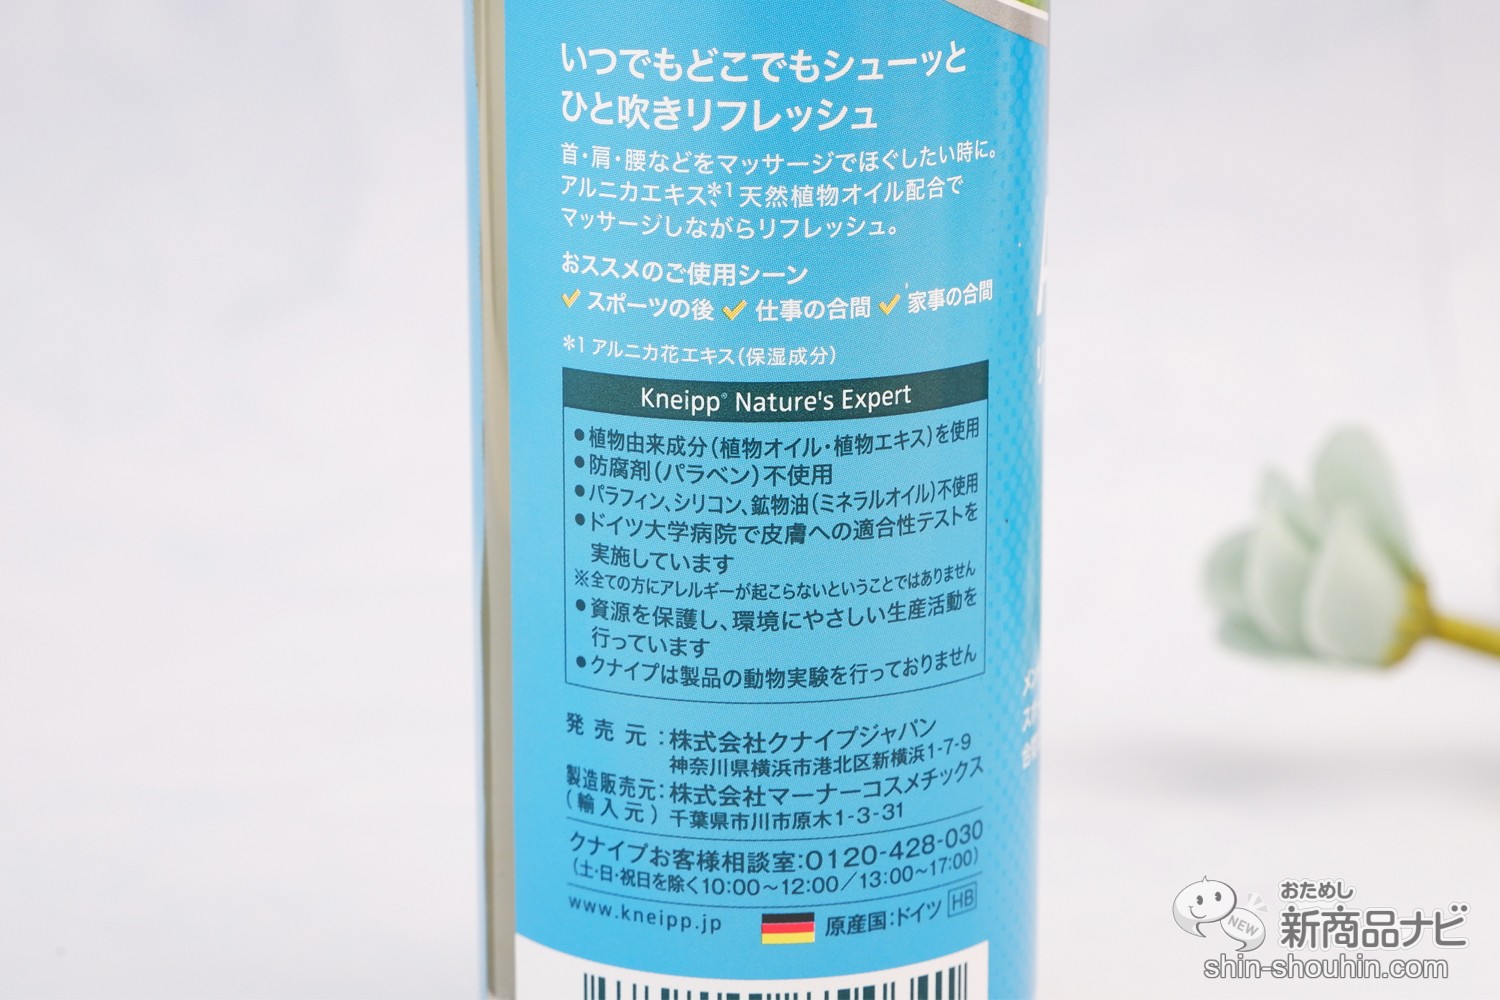 おためし新商品ナビ » Blog Archive » ドイツシェアNo.1入浴剤ブランドから『クナイプ リフレッシュスプレー 』。バスソルトでおなじみの良い香りで癒やしのマッサージタイム